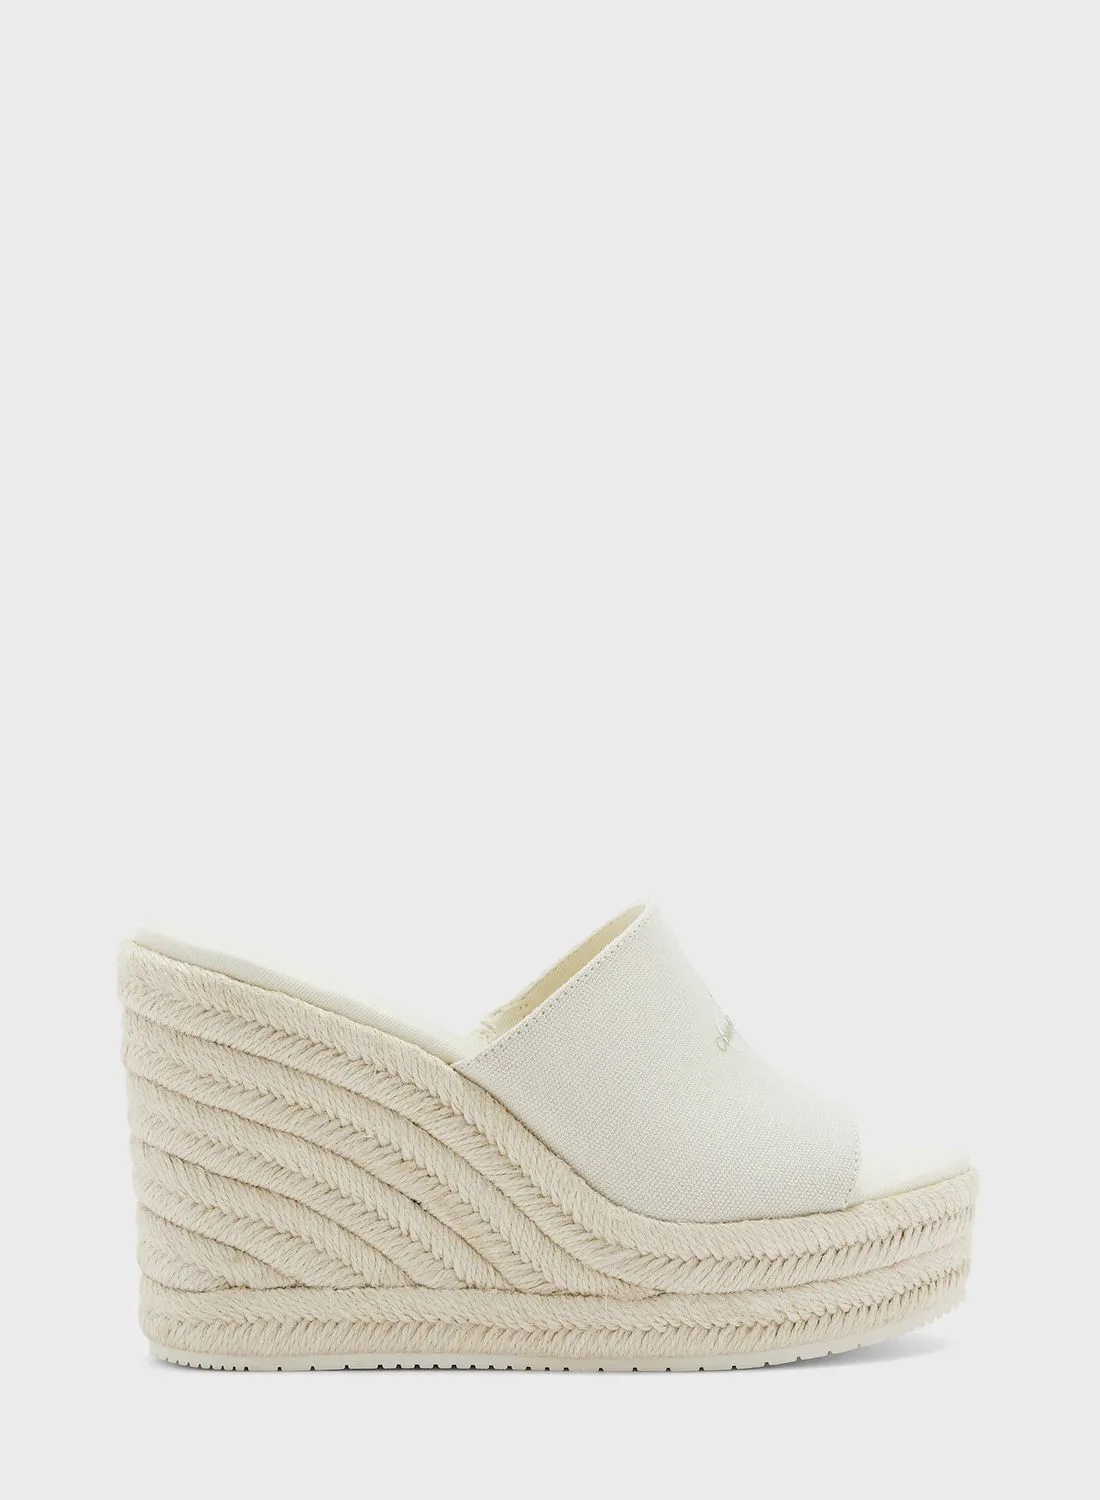 Calvin Klein Jeans Slide One Strap Wedge Sandals